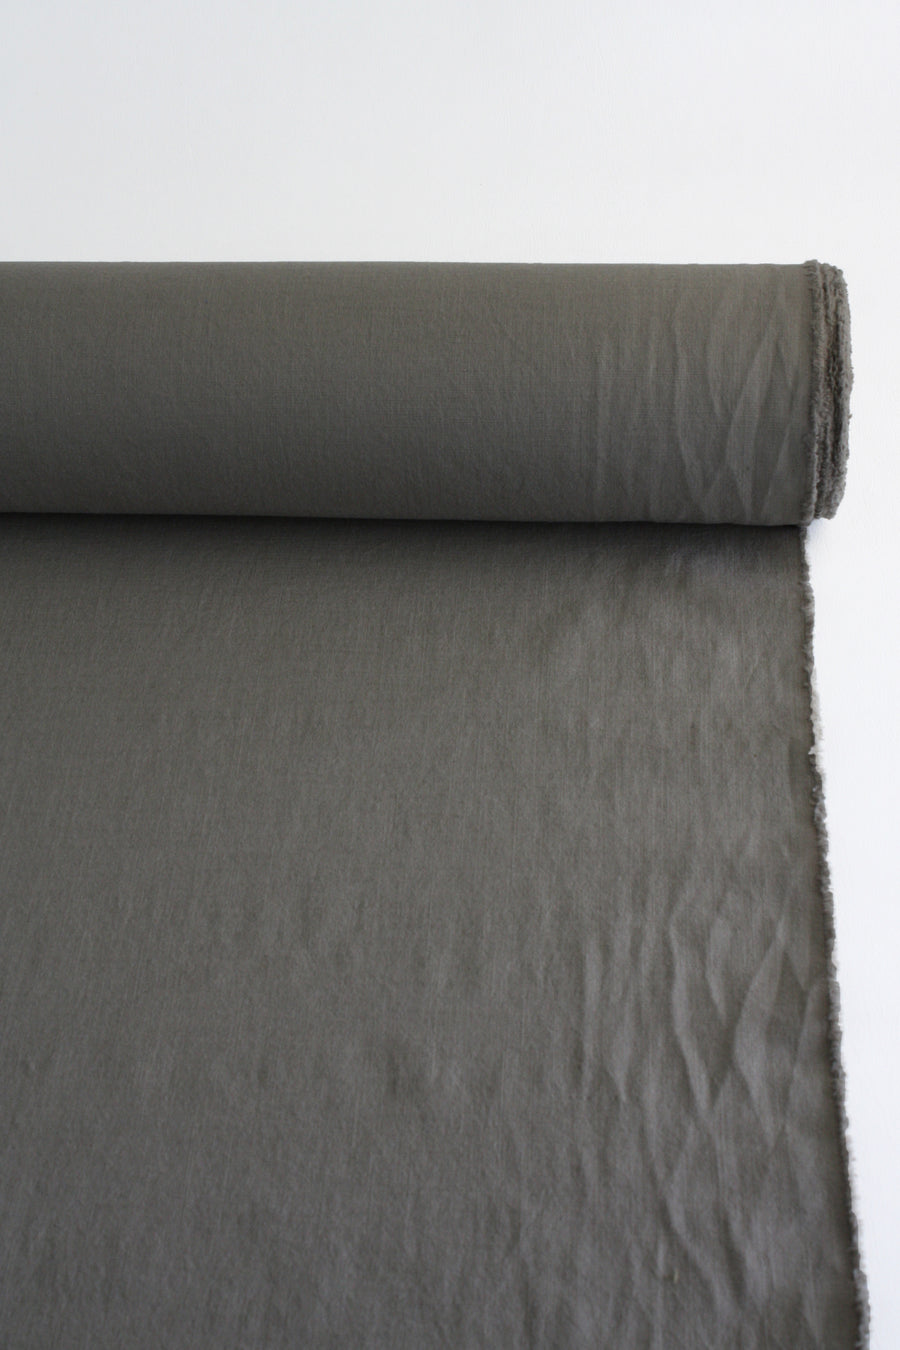 Tobias - Stretch Linen | Slate Grey